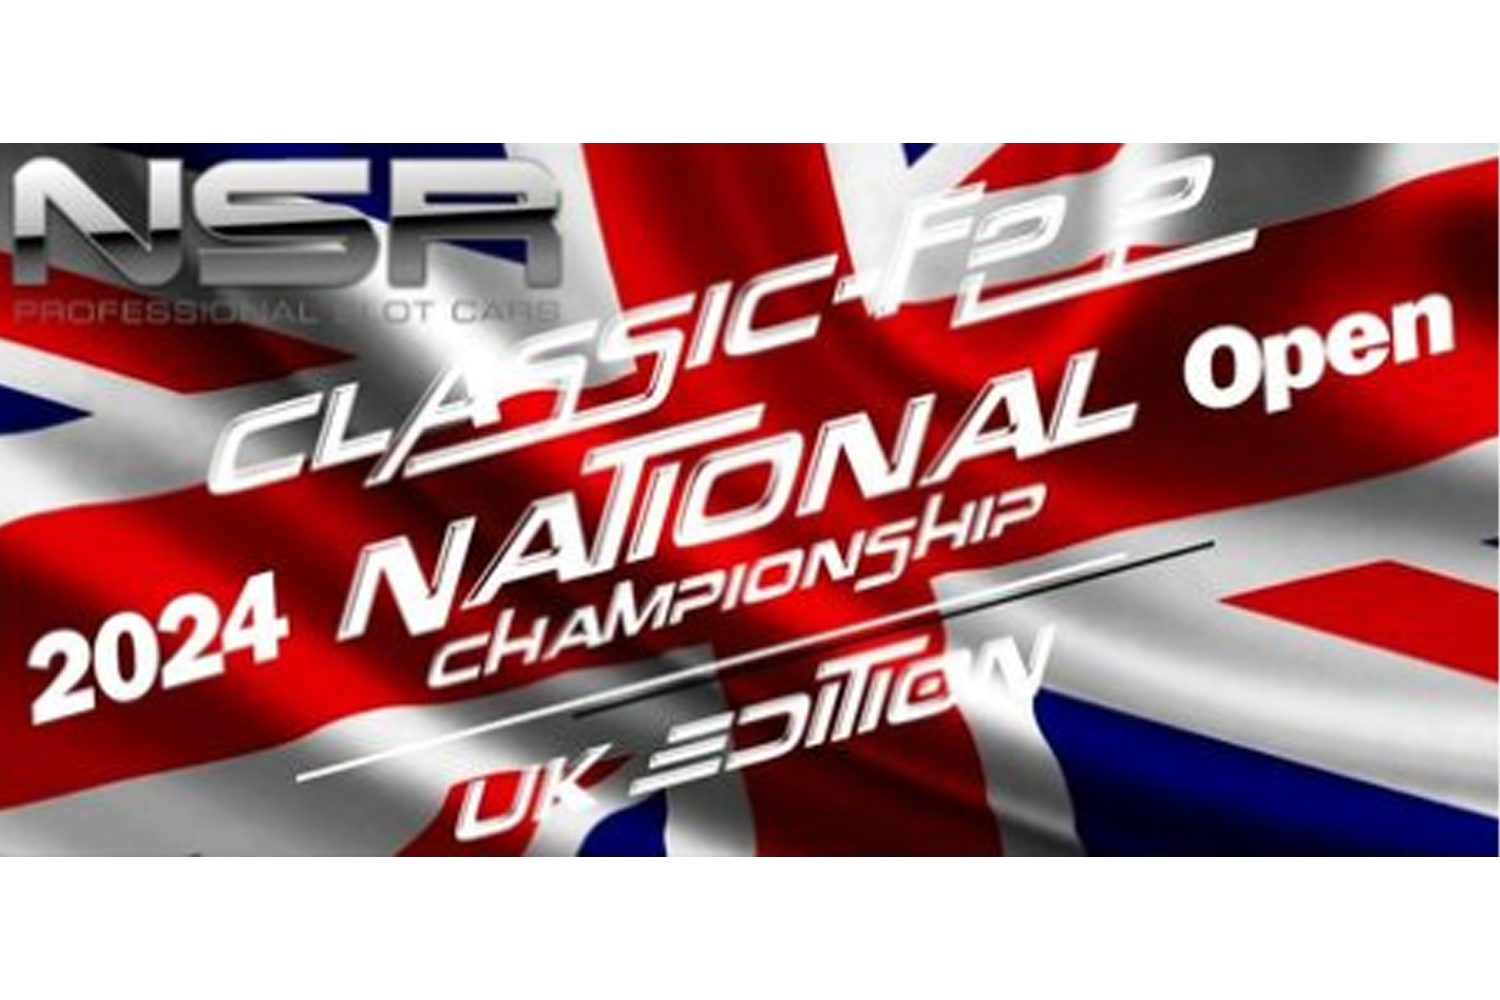 The NSR Britich Championship 2024 Logo